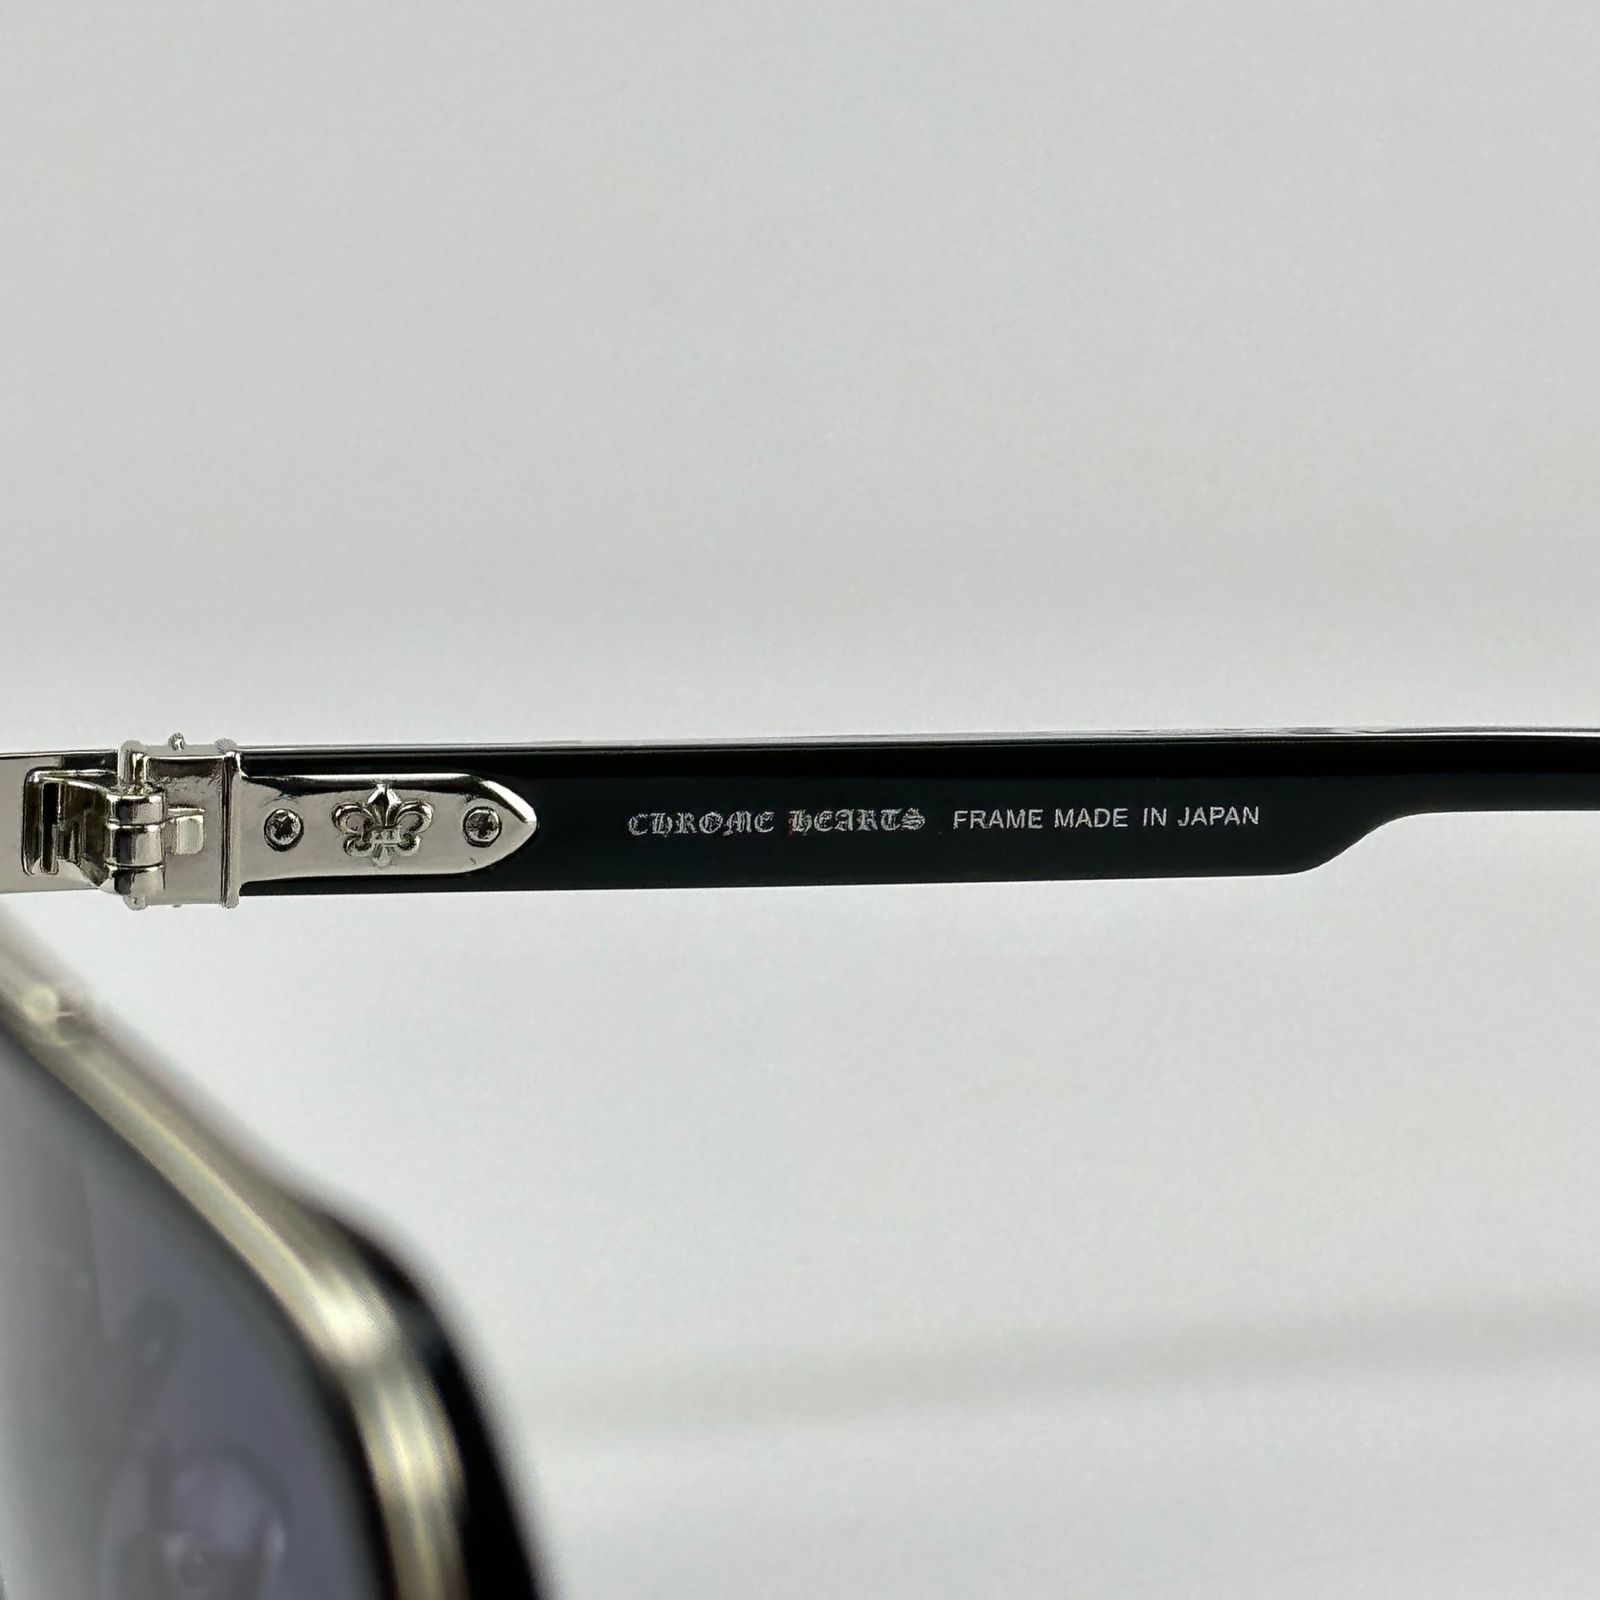 عینک آفتابی کروم هارتز مدل MBK CH8194 -  - 6